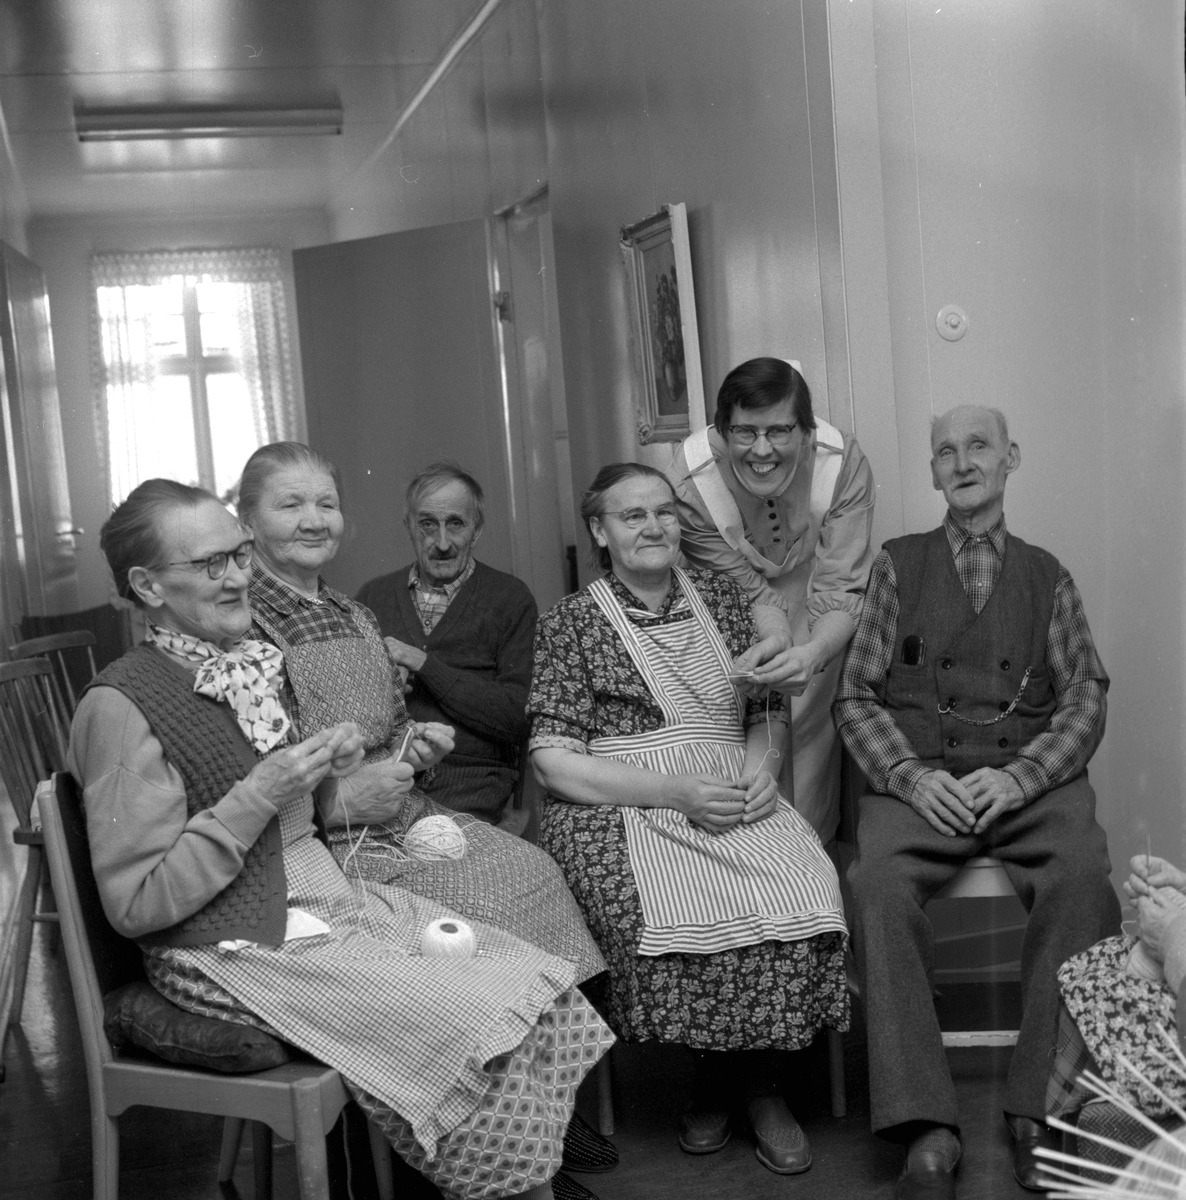 Ålderdomshem i Hällefors.
Februari 1956.